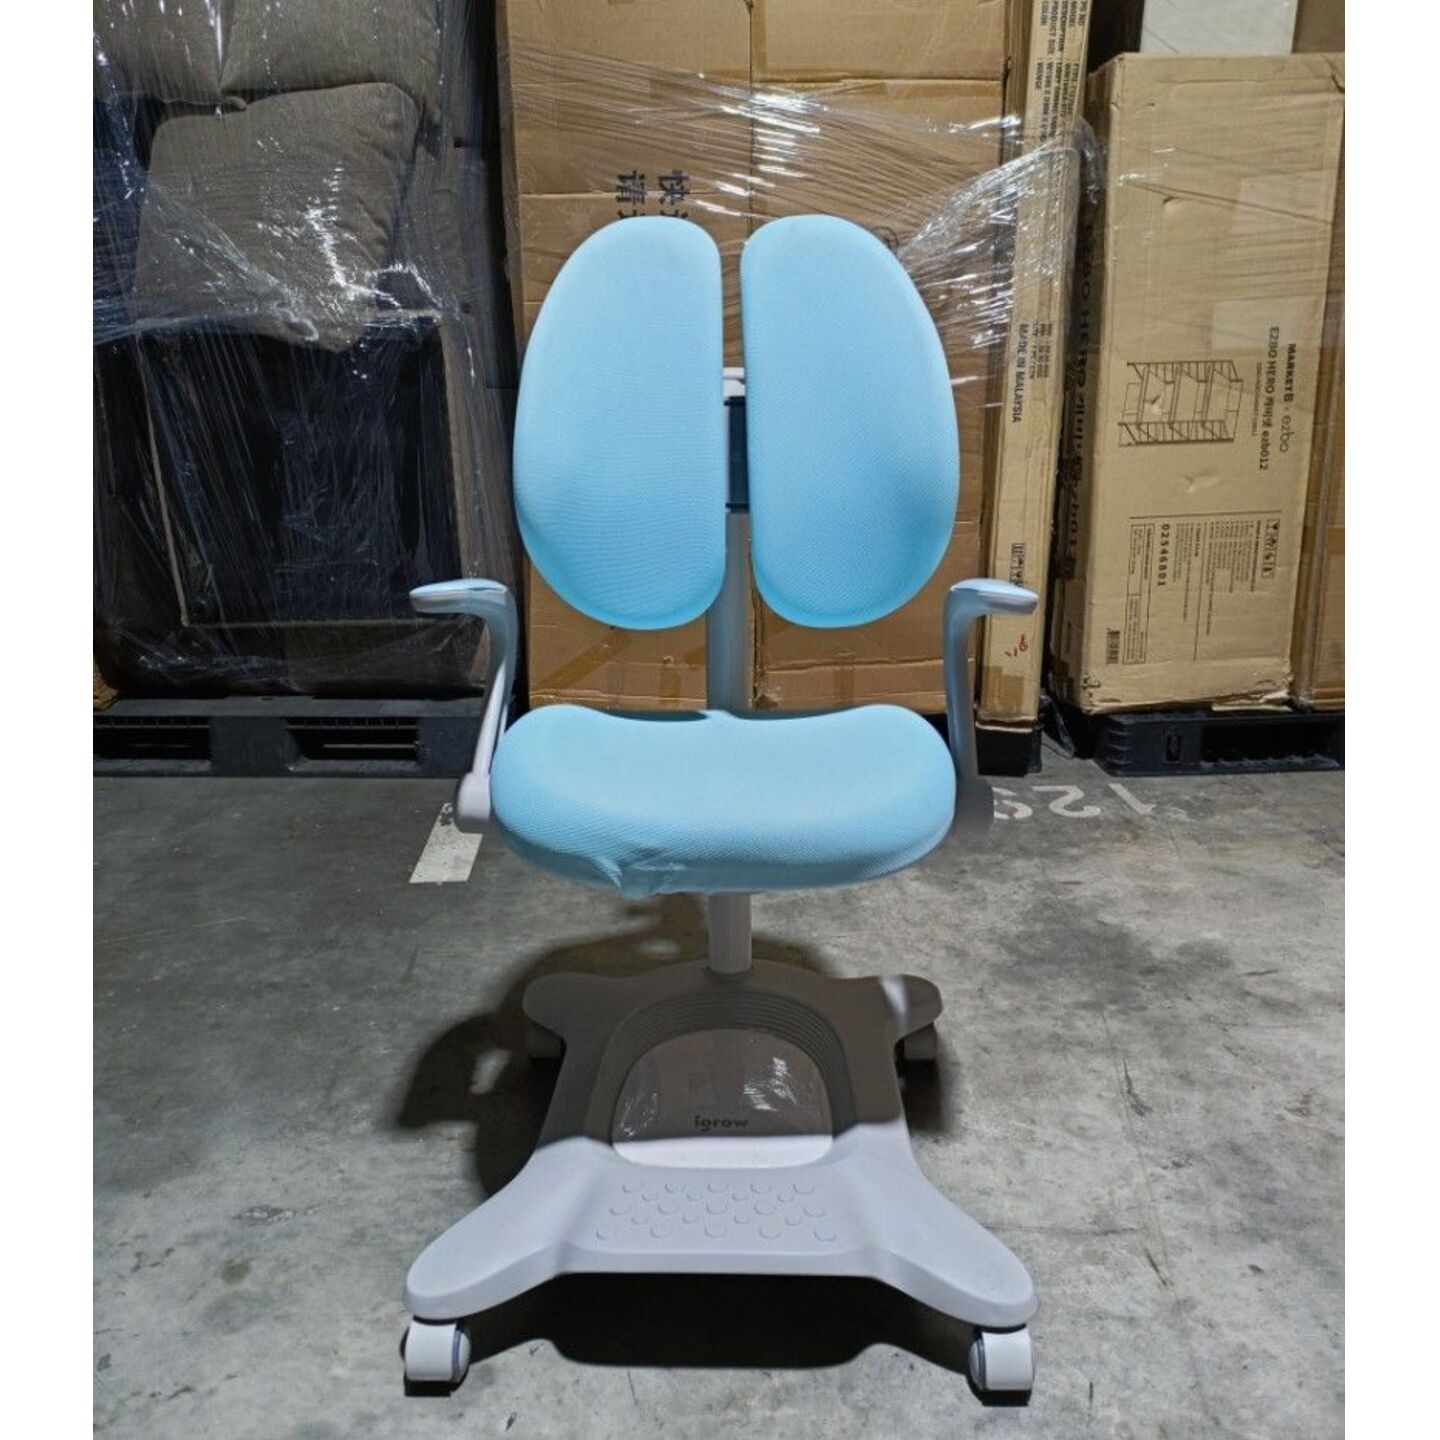 BUSCH IV Ergonomics Children's Work Chair in BABY BLUE